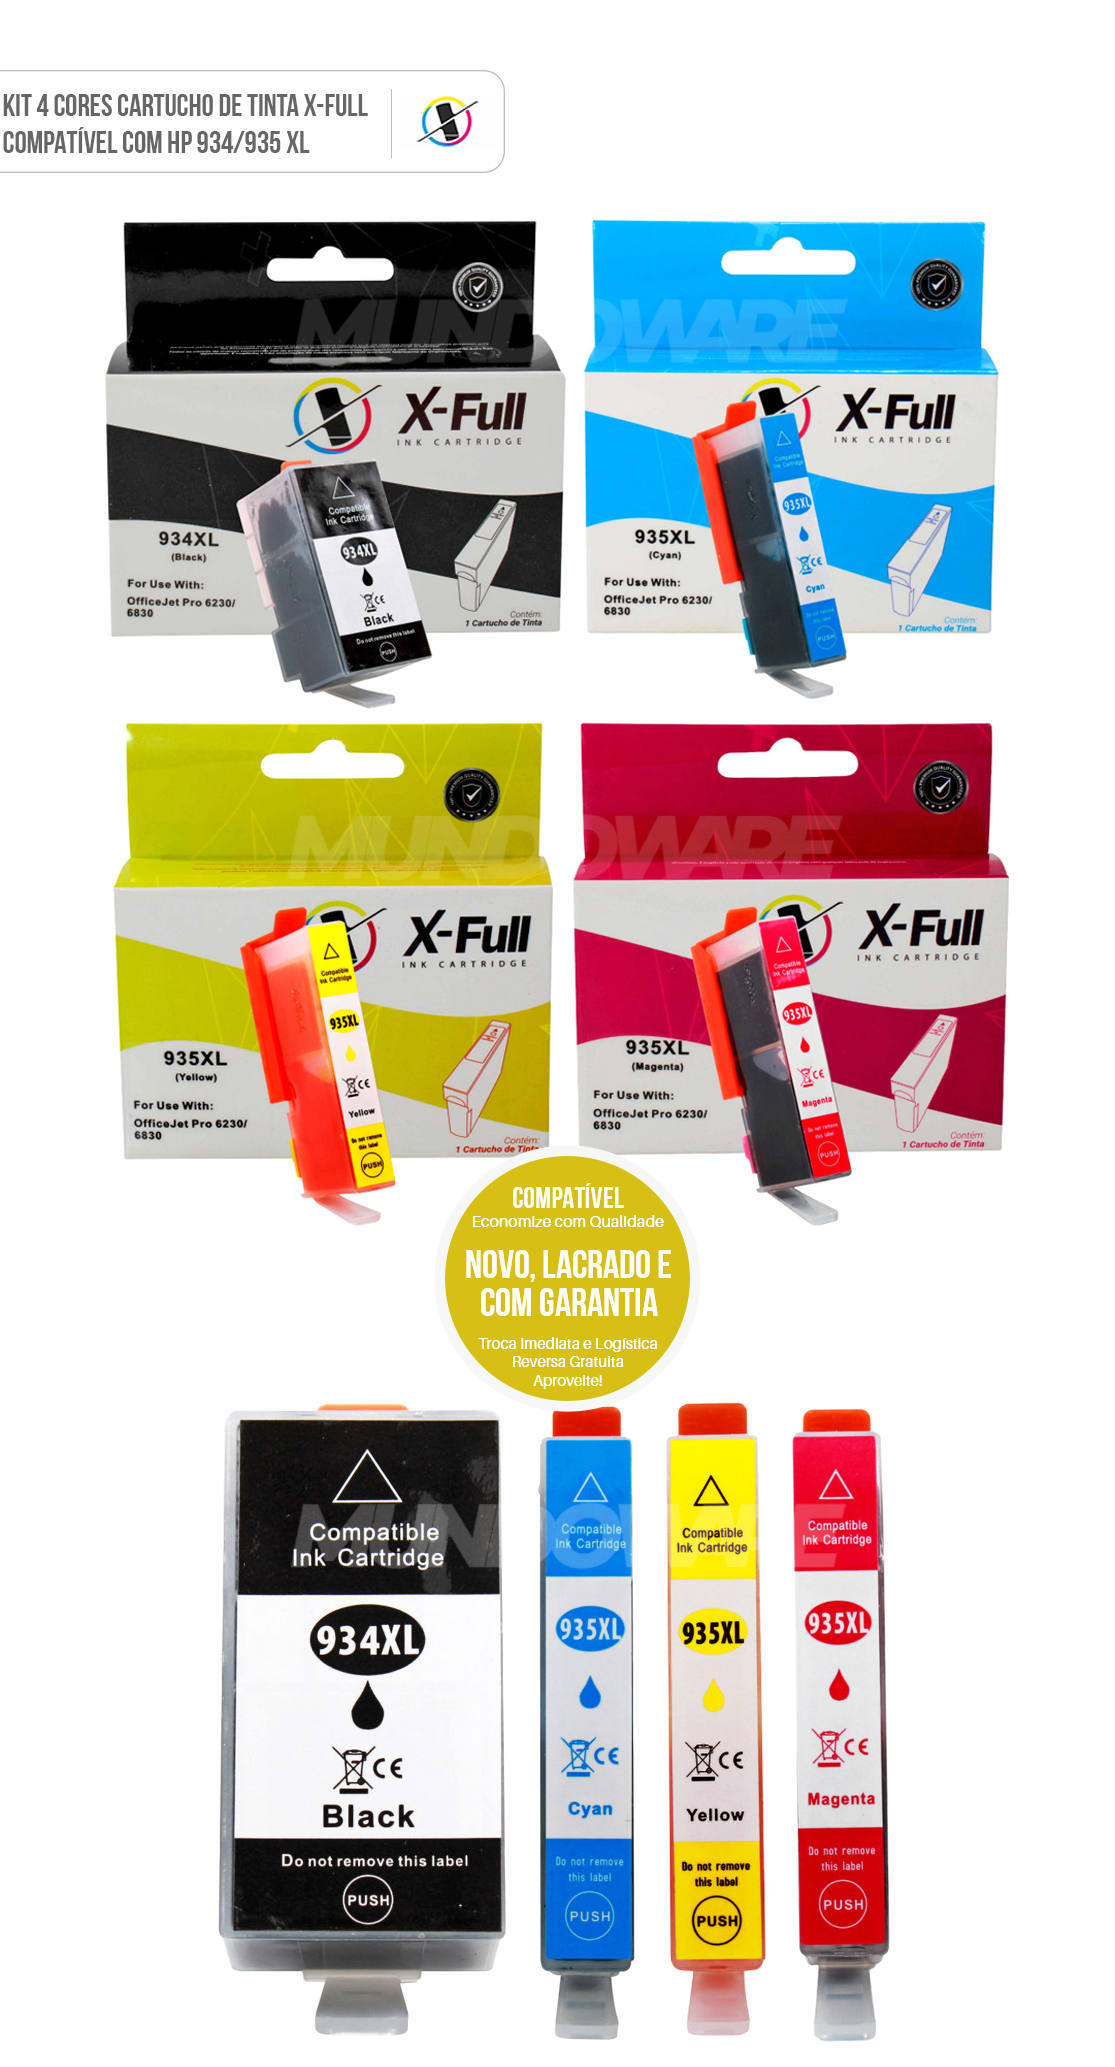 Kit 4 Cores Cartucho de Tinta X-Full Compatvel com HP 934xl 935xl para Impressora 6230 6830